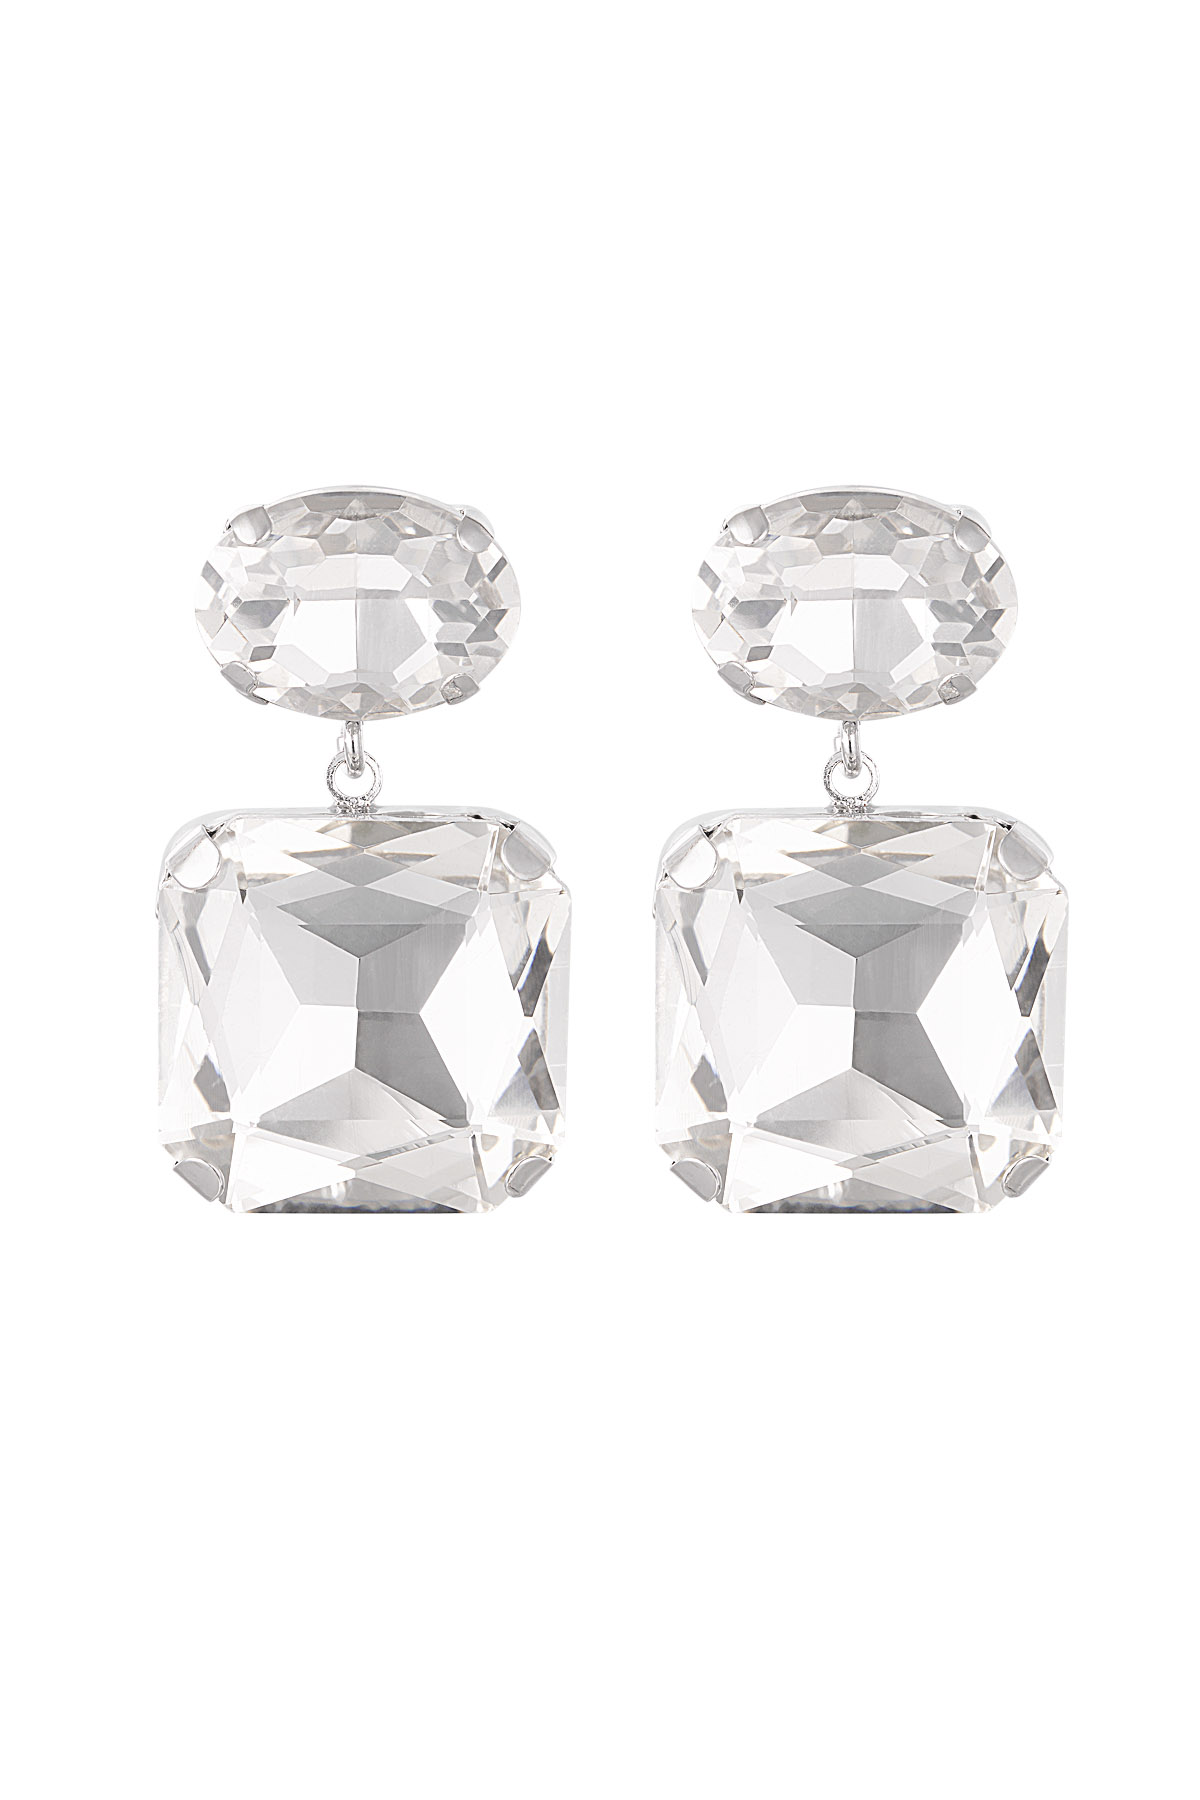 Boucles d'oreilles perles de verre carrées/rondes - argent Perles de verre h5 